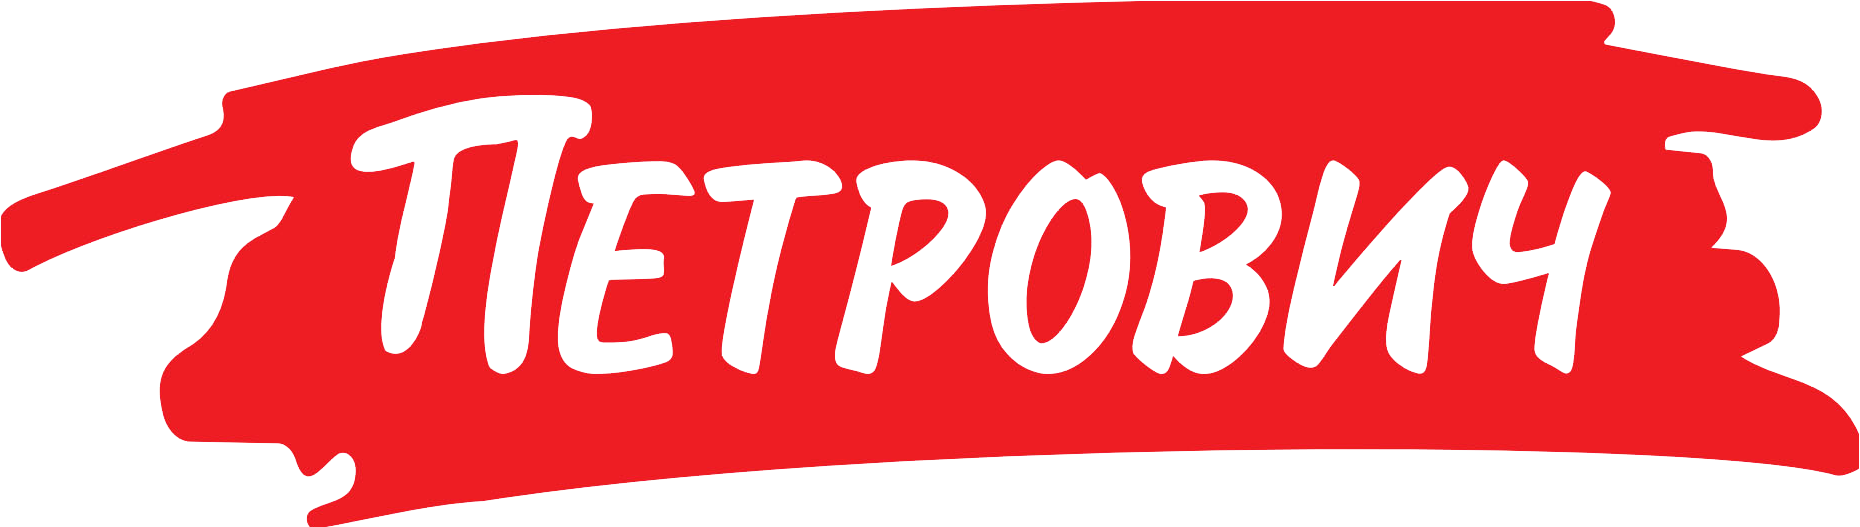 Petrovich